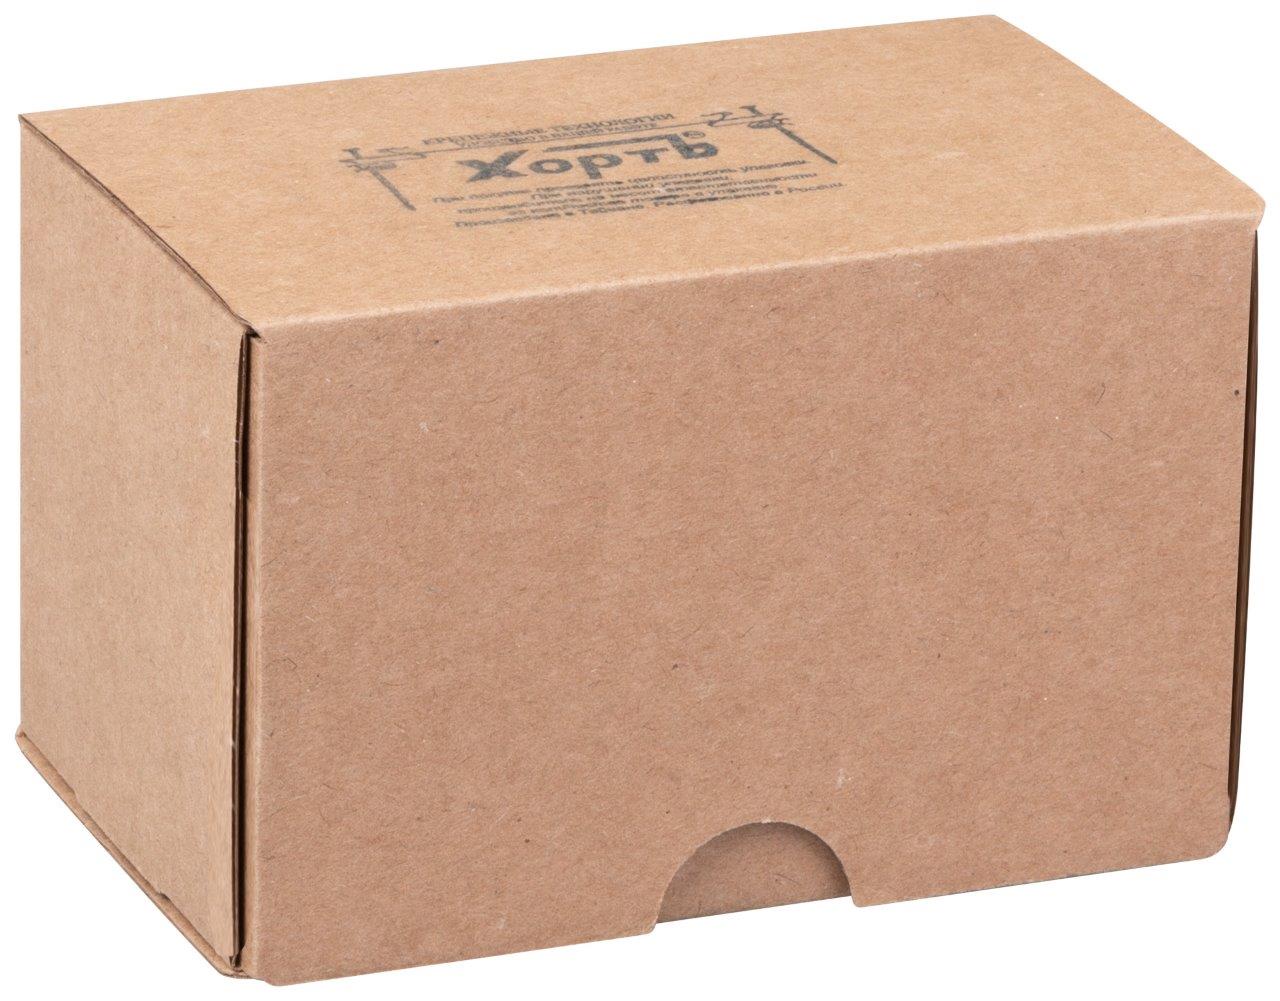 КАТЕГОРИЯ "4""средняя" фасовка в картонные коробки. по 250 шт. (или 0,25 кг)